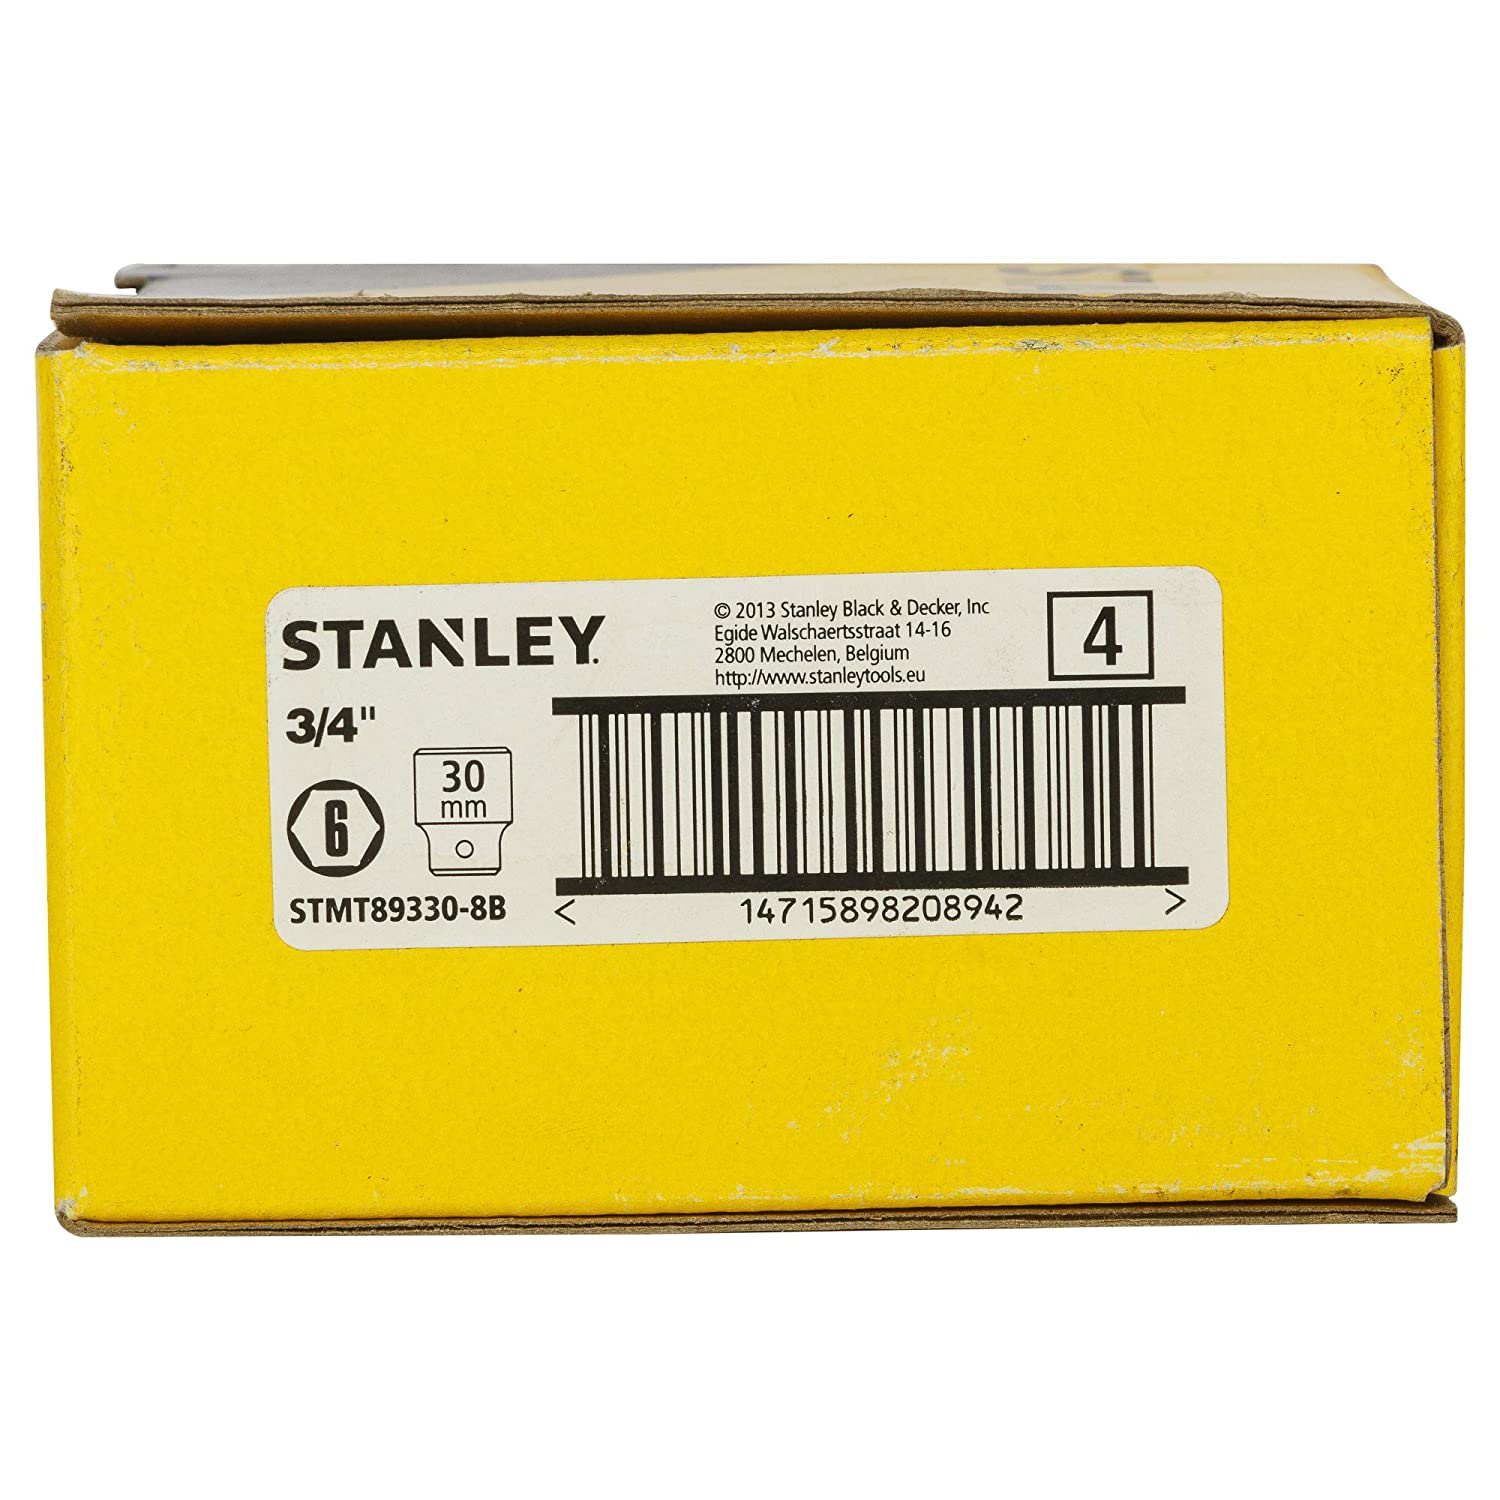 Hình ảnh 8 của mặt hàng Đầu tuýp 3/4" 6PT 30mm Stanley STMT89330-8B